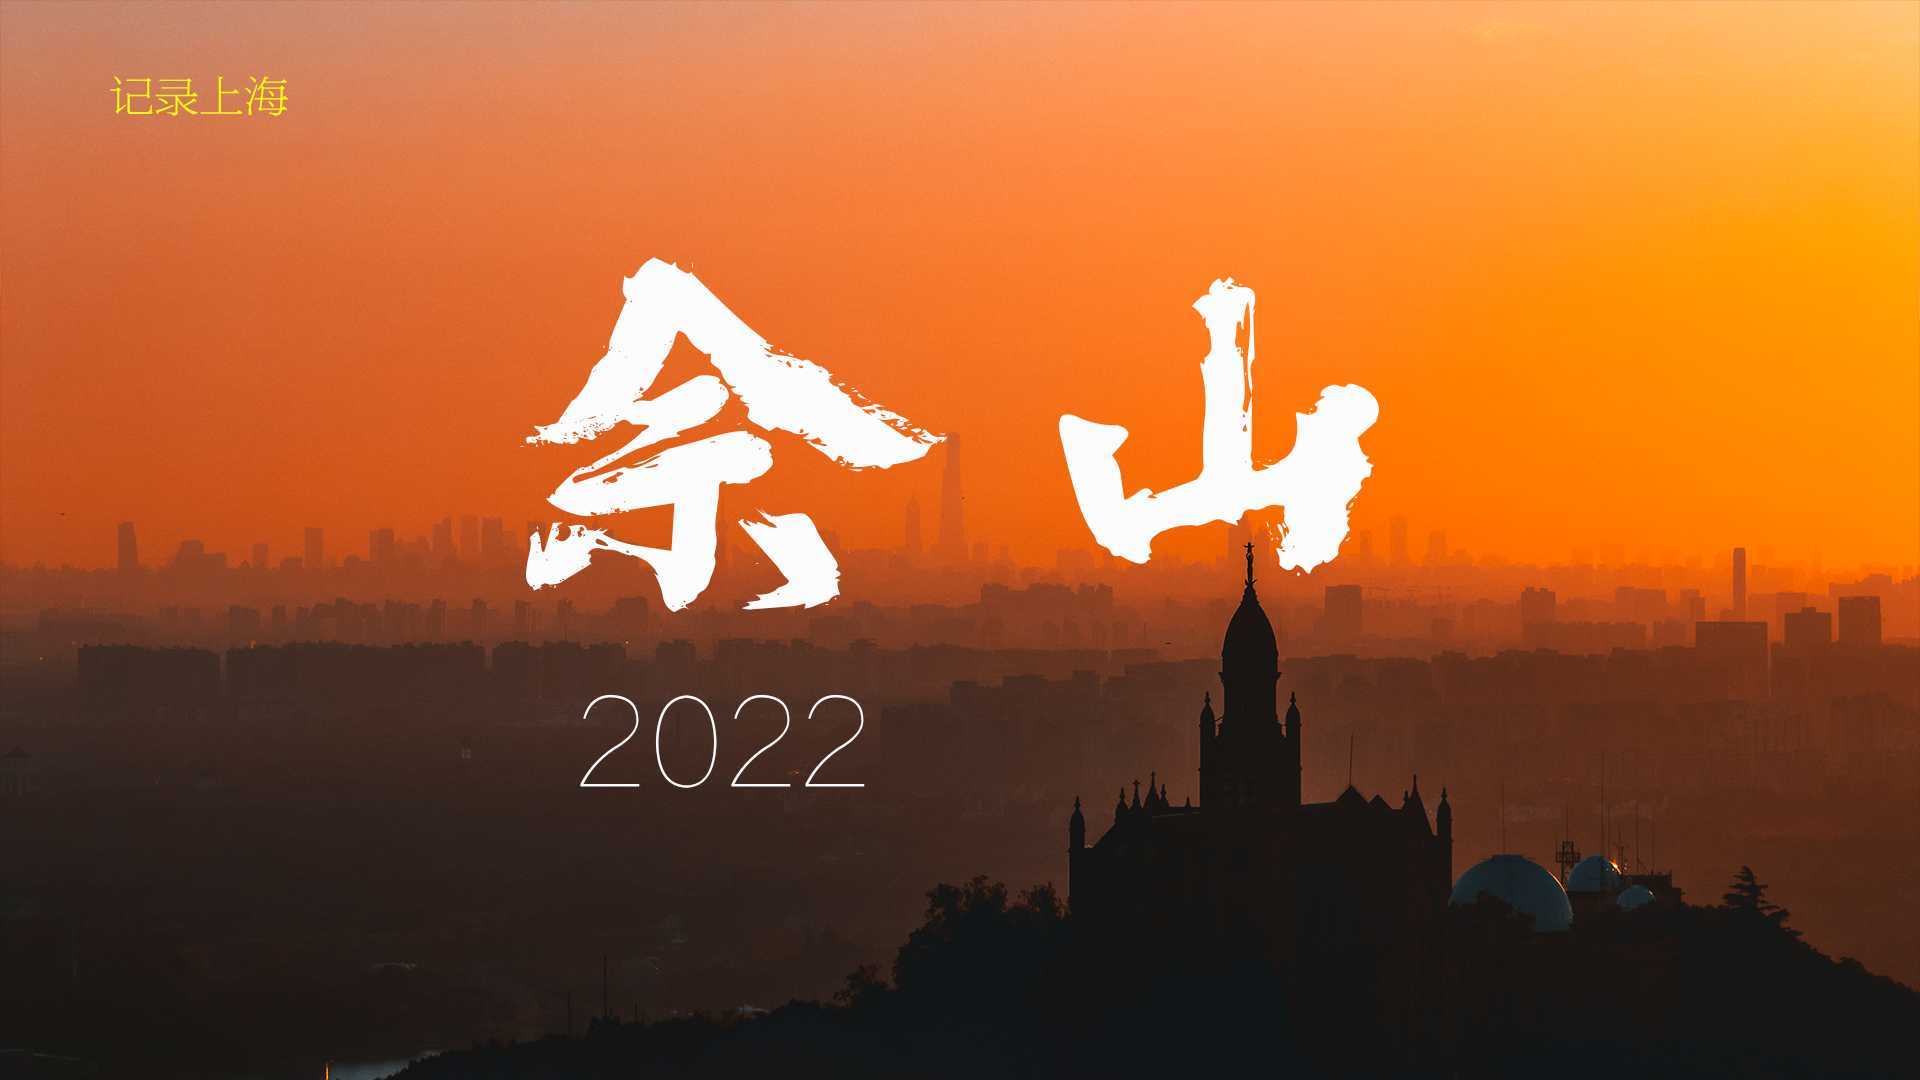 佘山2022_S4K